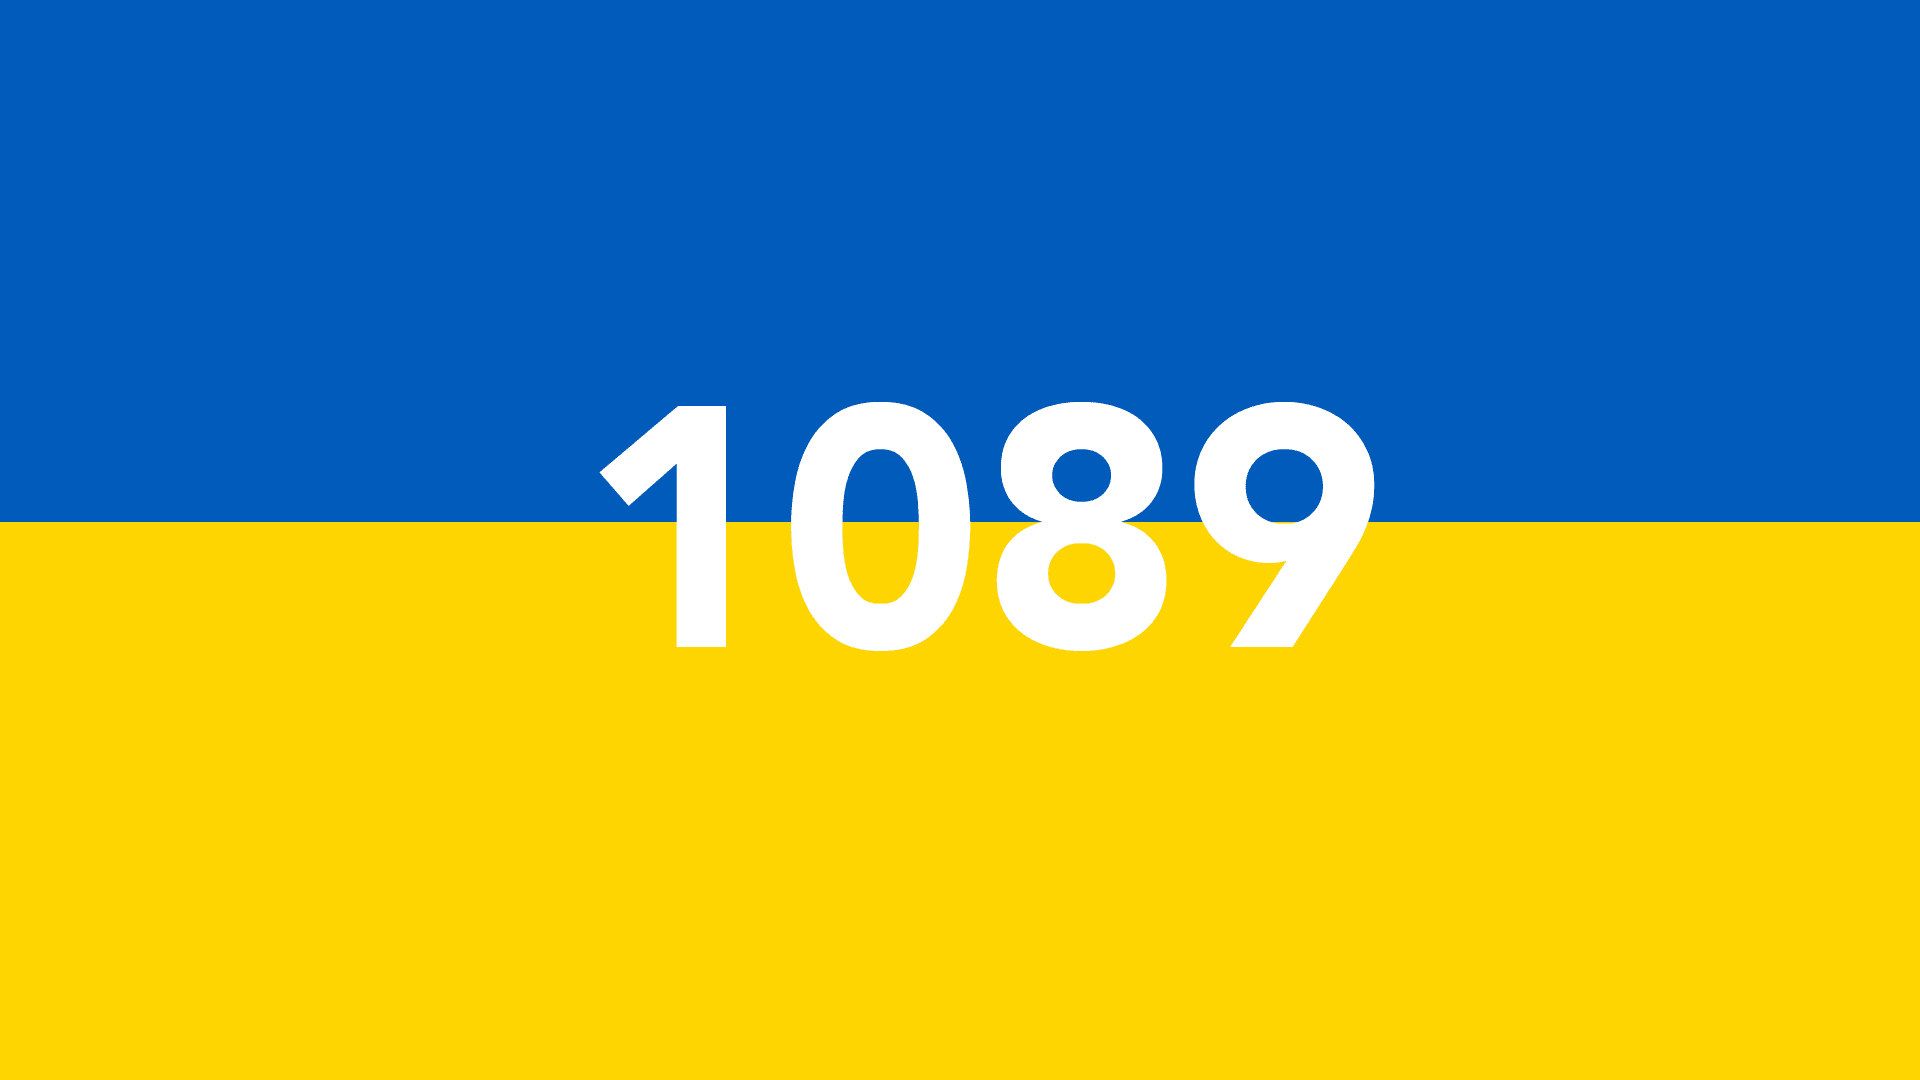 1089